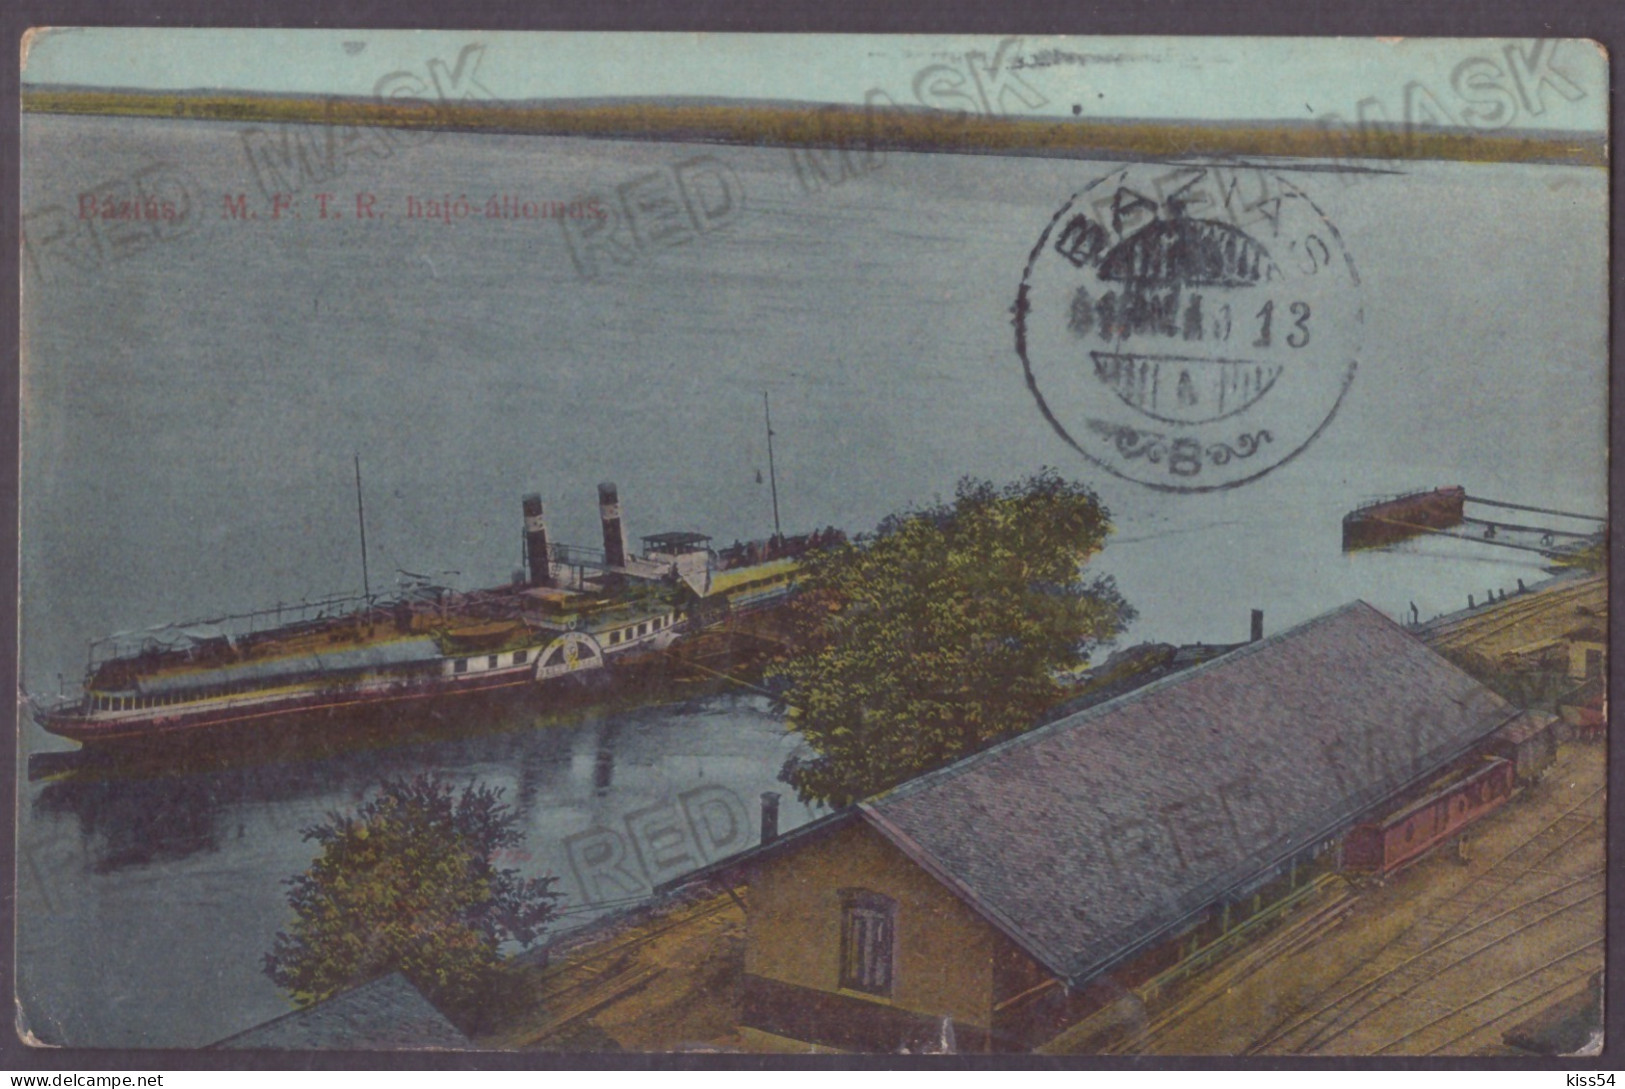 RO 40 - 23121 BAZIAS, Caras-Severin, Railway & Ship, Romania - Old Postcard - Used - 1913 - Roemenië